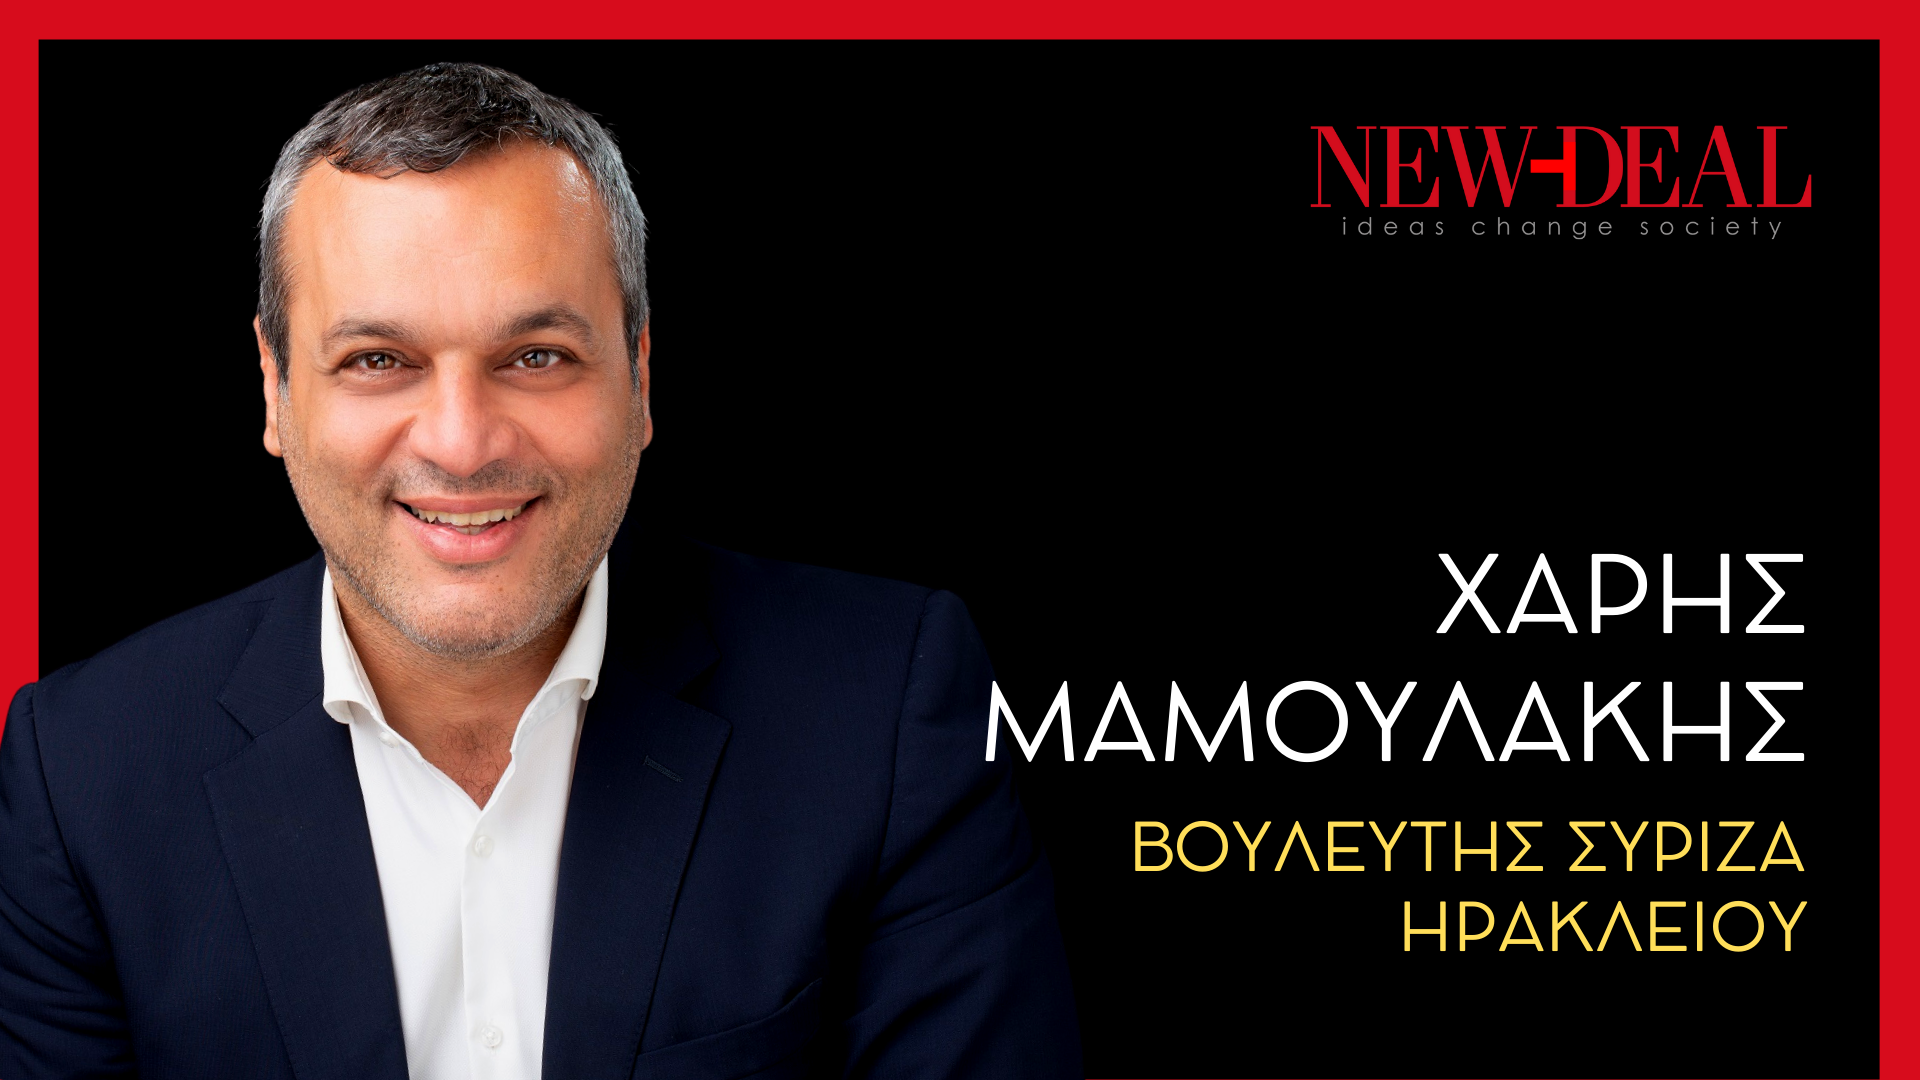 Χάρης Μαμουλάκης Βουλευτής ΣΥΡΙΖΑ Ηρακλείου new deal